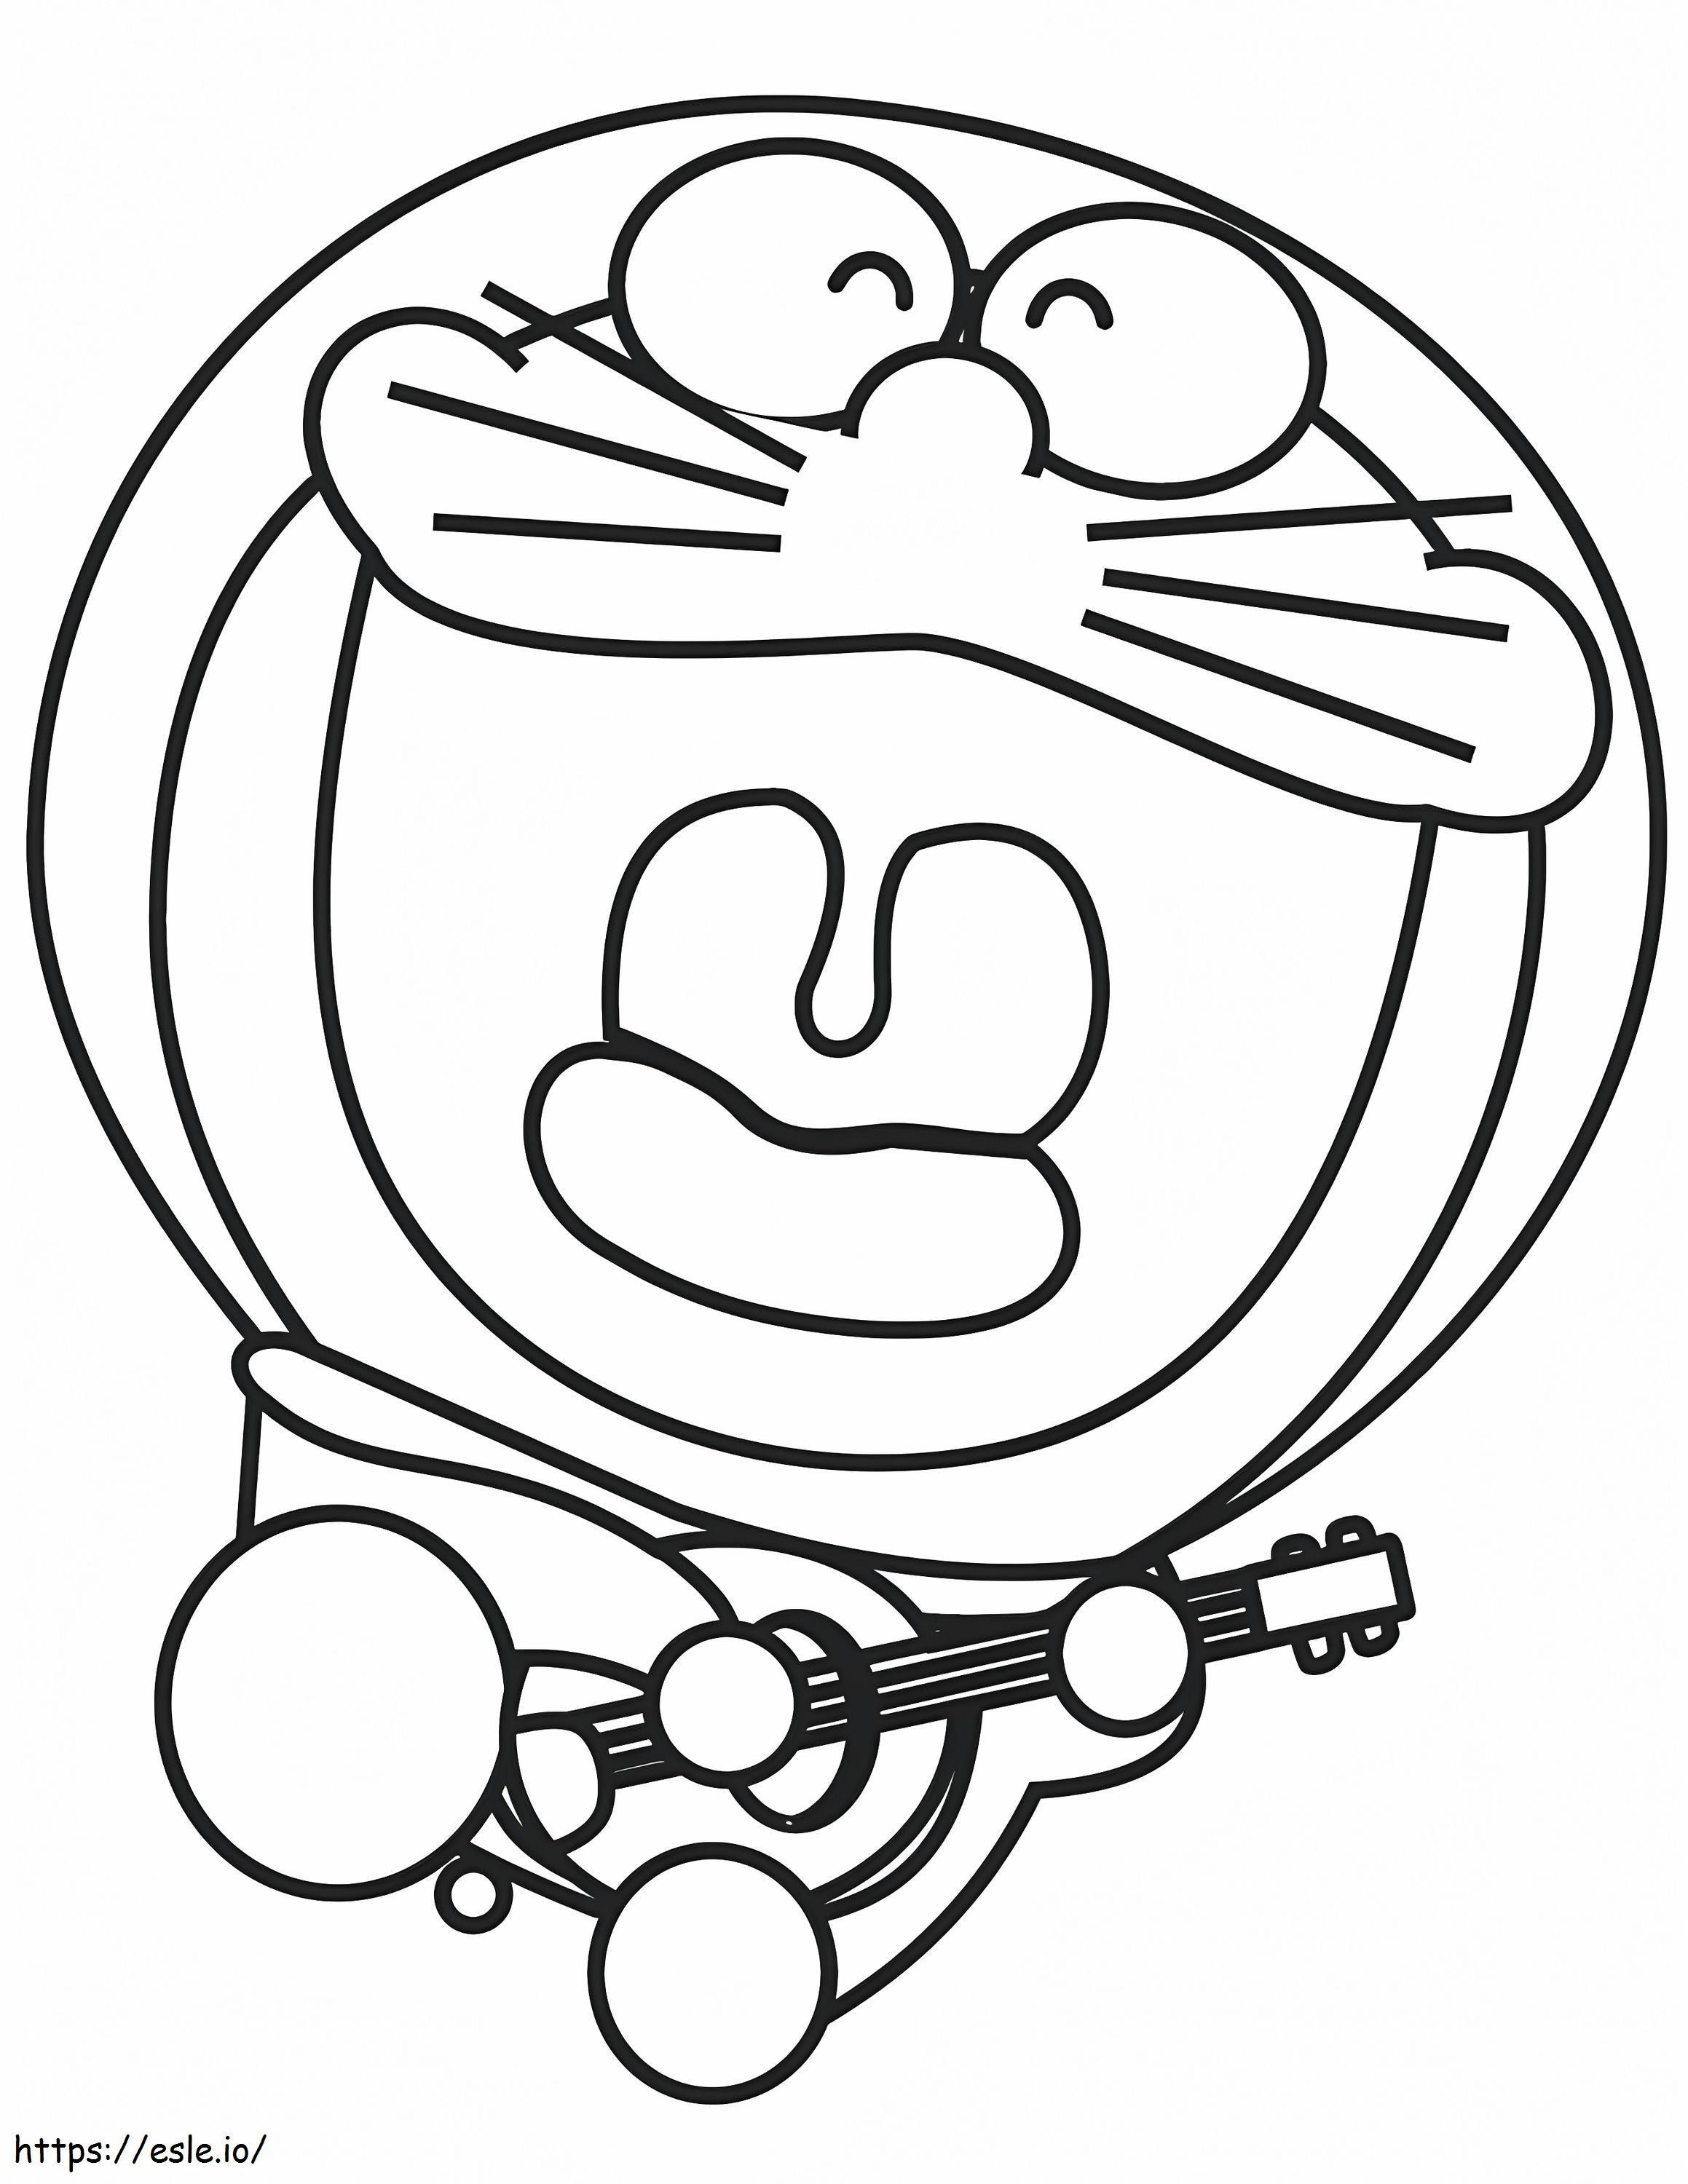 1531276686 Doraemon spielt Gitarre A4 ausmalbilder